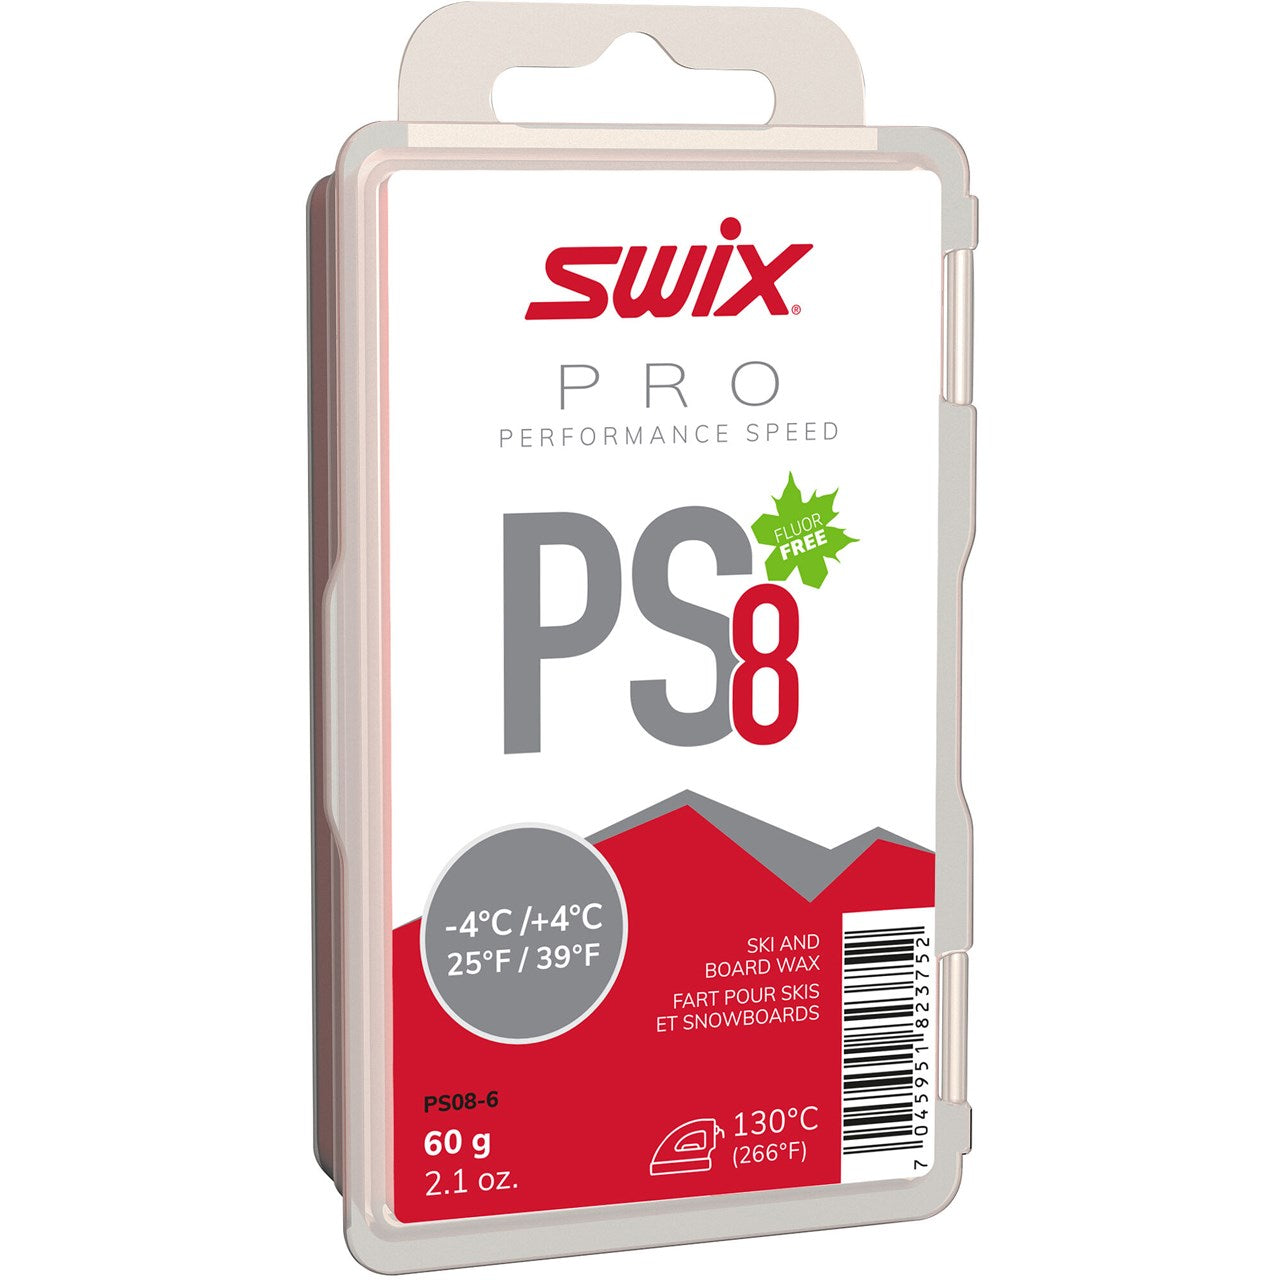 Swix PS8 Red 60g - Performance Speed SKI & SNOWBOARD WAX Swix   